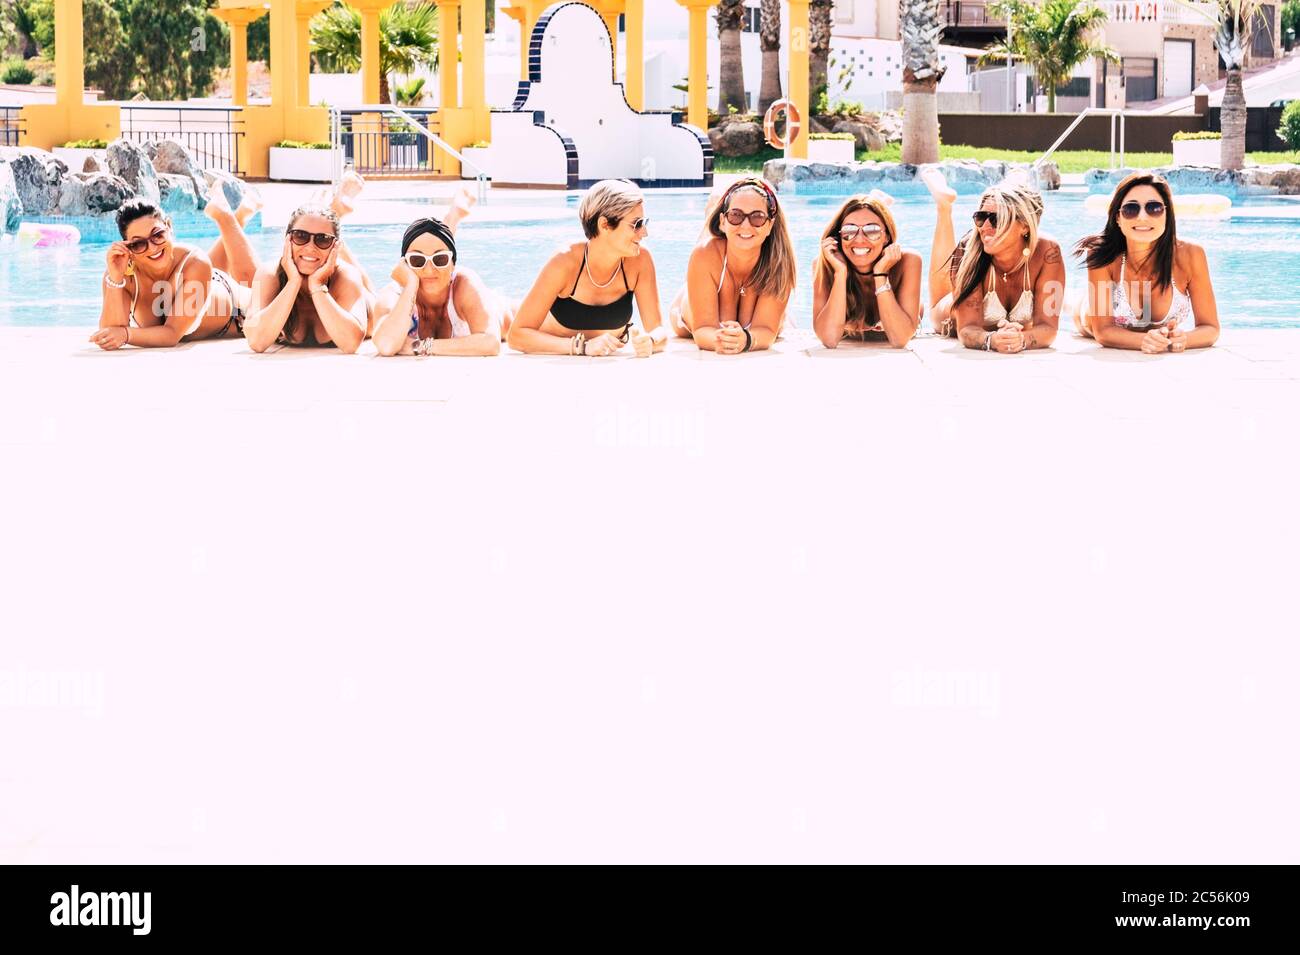 Sommerferienurlaub für kaukasische Frauen Freunde - Gruppe junger Frauen legen sich am Pool nieder, genießen die heiße Jahreszeit zusammen in Freundschaft - Hap Stockfoto